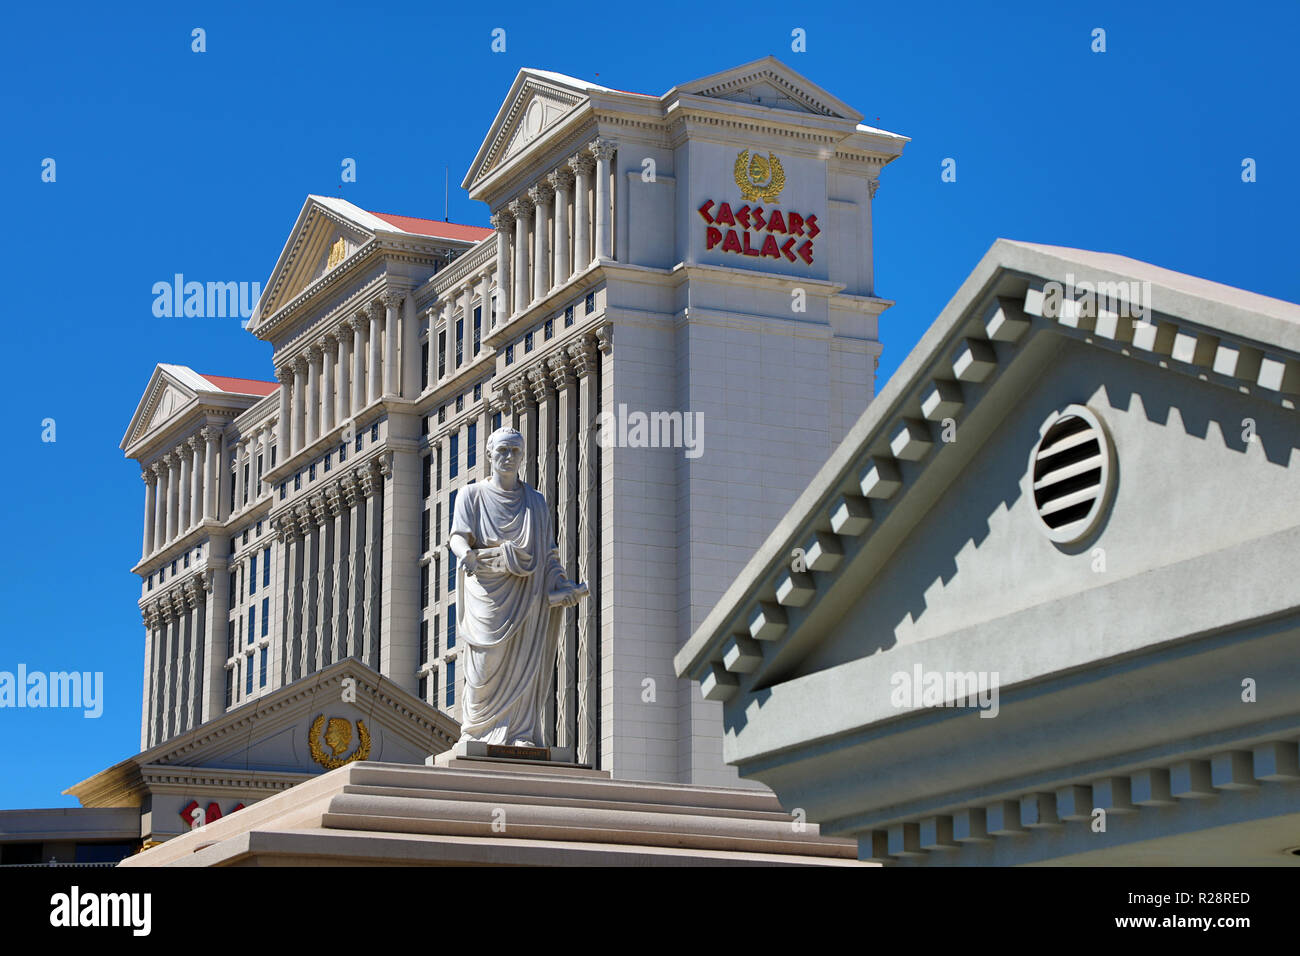 Caesars Palace Hotel and Casino, Las Vegas, Nevada, USA Stockfoto